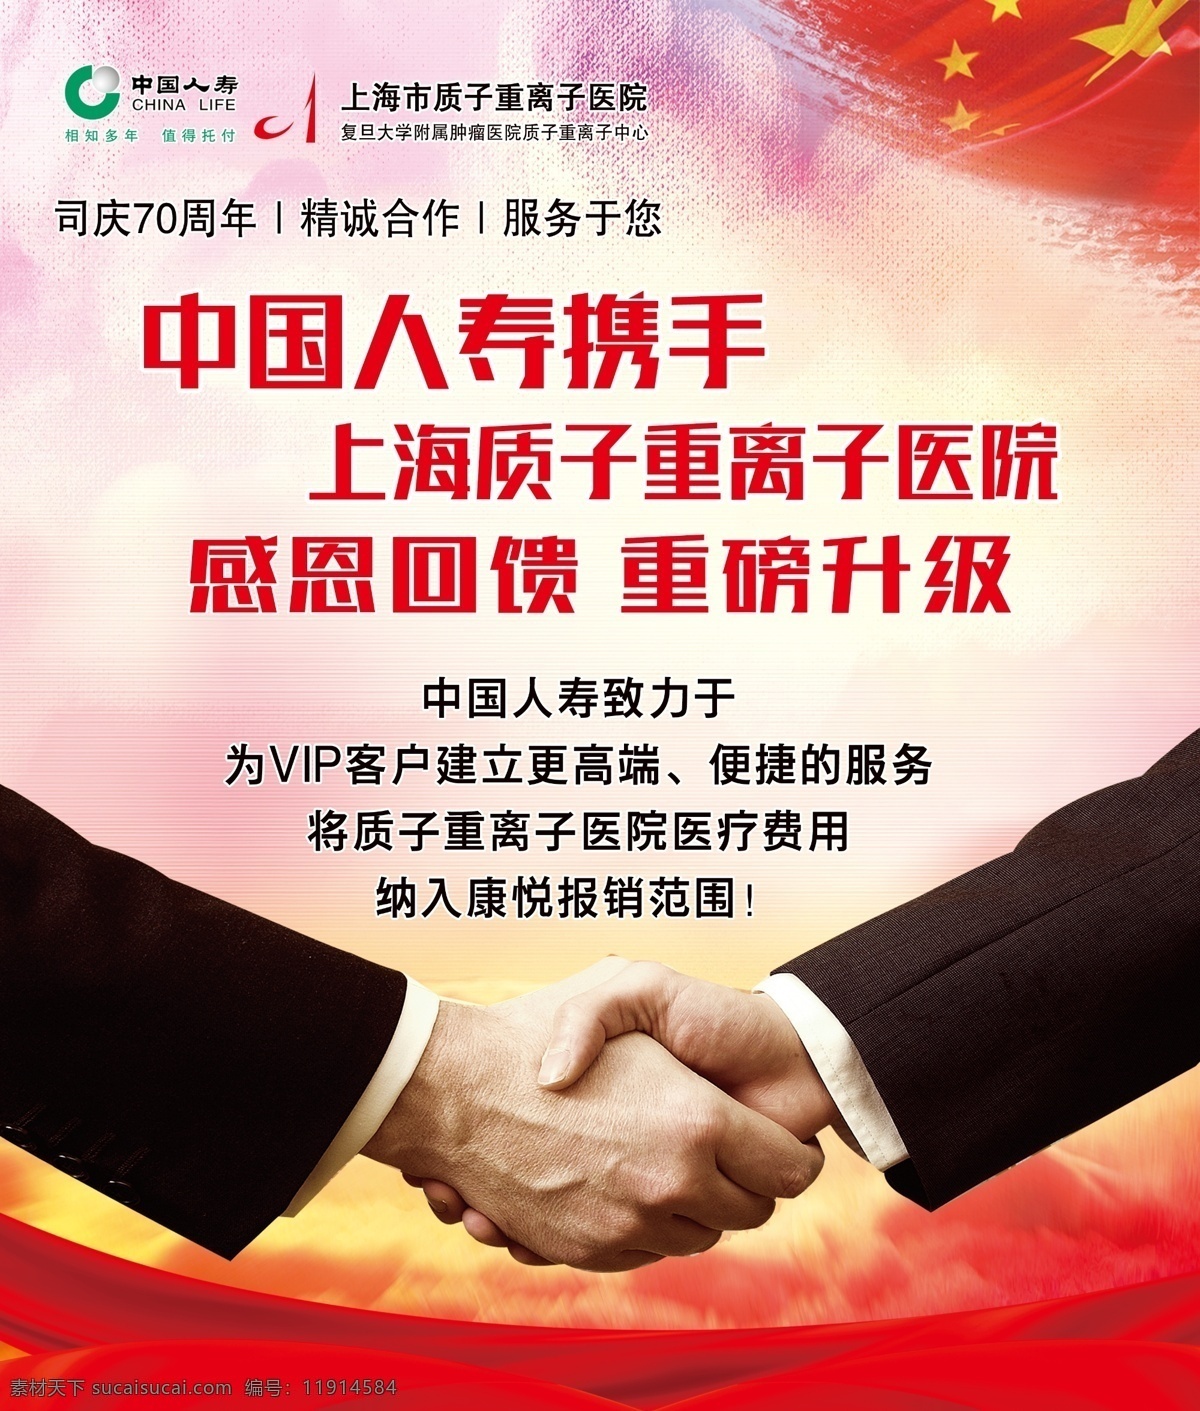 中国人寿 携手 人寿 质子重离子 握手 红旗 强强联手